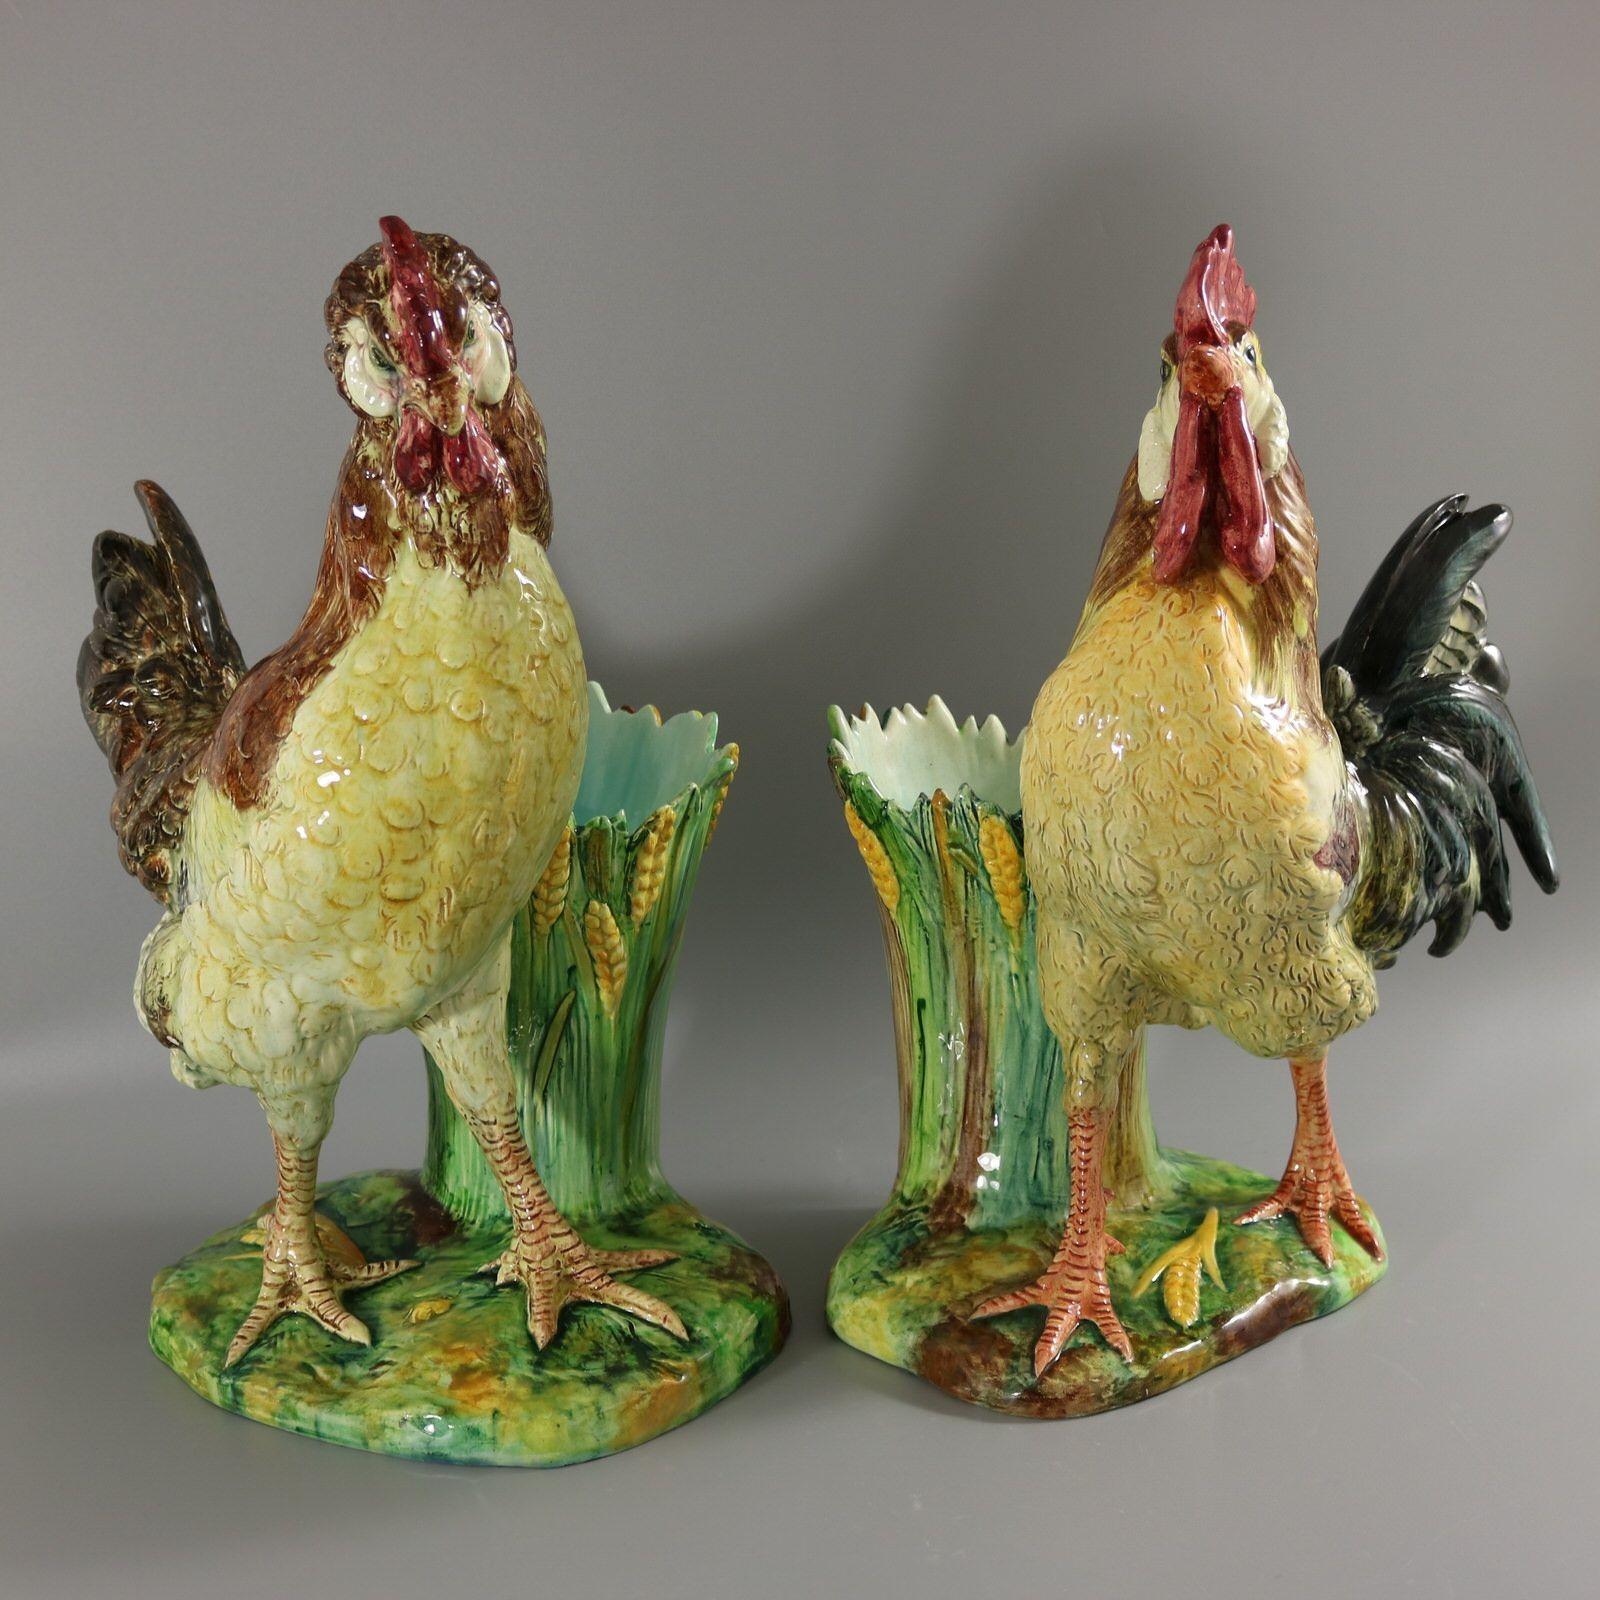 Paar Majolika-Vasen von Jerome Massier Fils mit einer Henne und einem Hahn, die vor einer Vase stehen. Die Vase hat Blätter und Weizen an den Seiten. Färbung: Braun, gelb, grün, sind vorherrschend. Der Hahn trägt die Herstellermarken der Töpferei